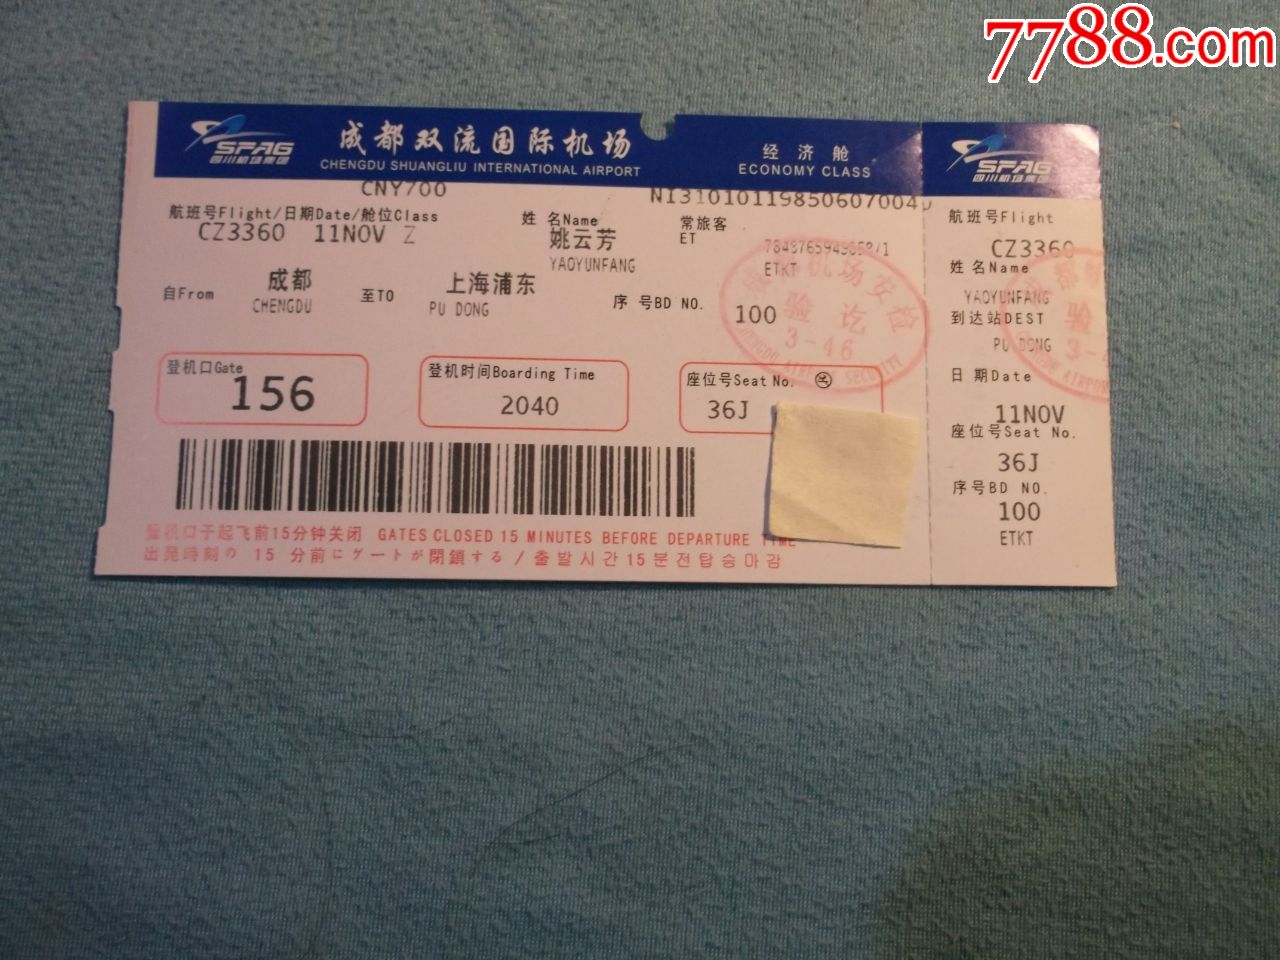 飞机票:成都双流国际机场至上海浦东经济舱姚